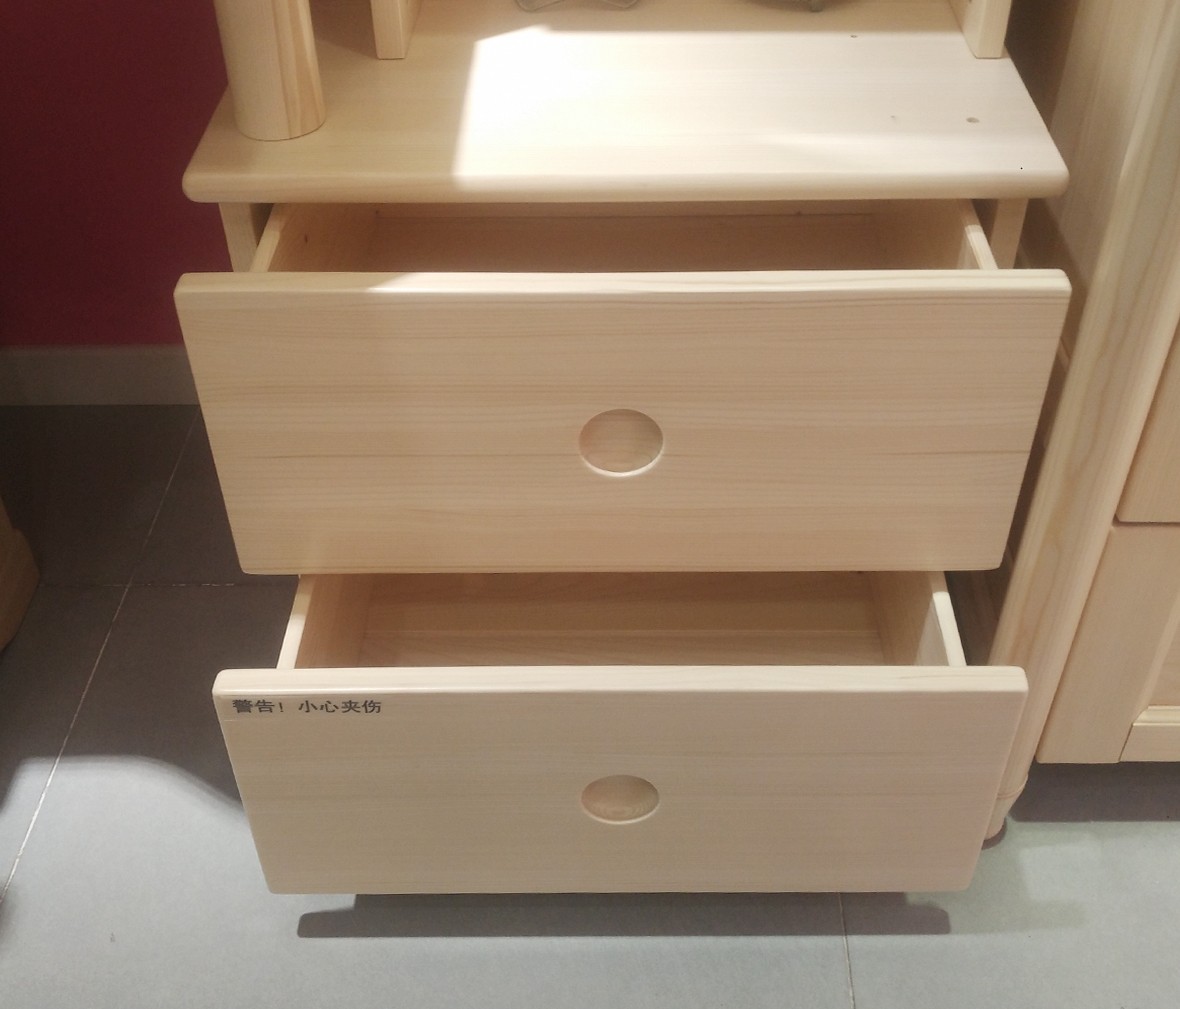 松堡王国 SP-A-T010型号书桌 进口芬兰木材质书桌